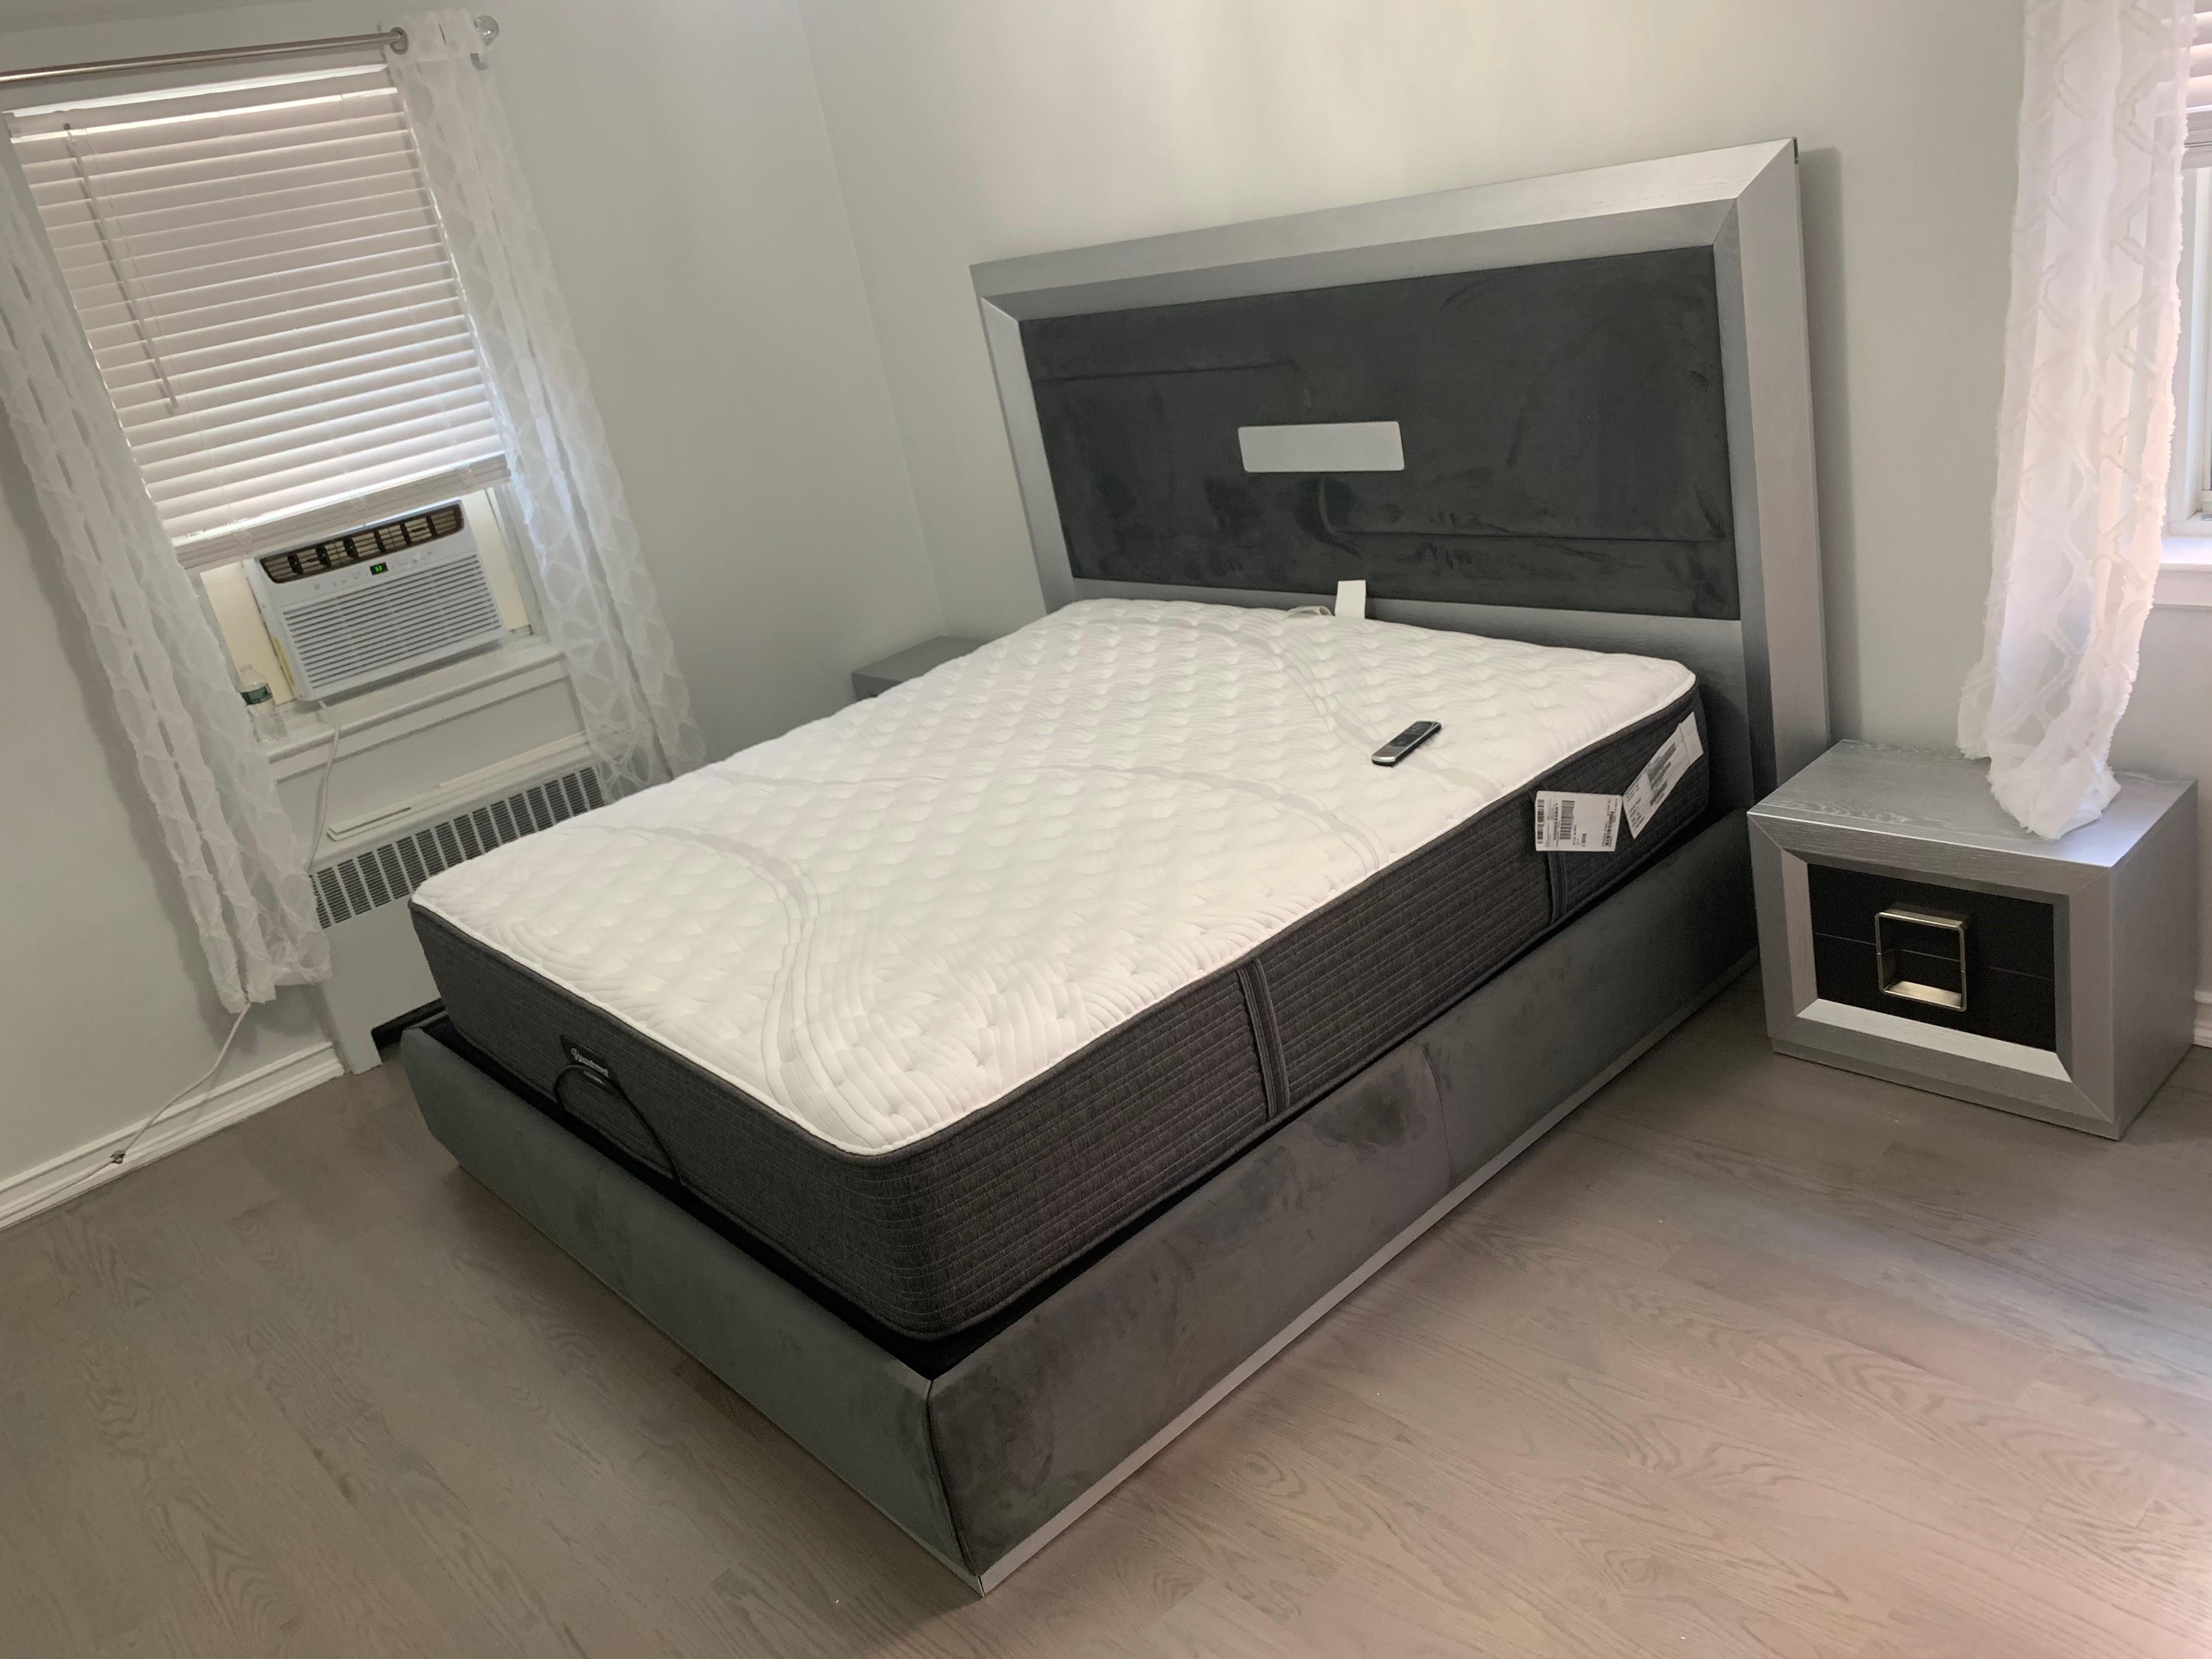 

    
ENZOBEDQS Platform Bedroom Set
